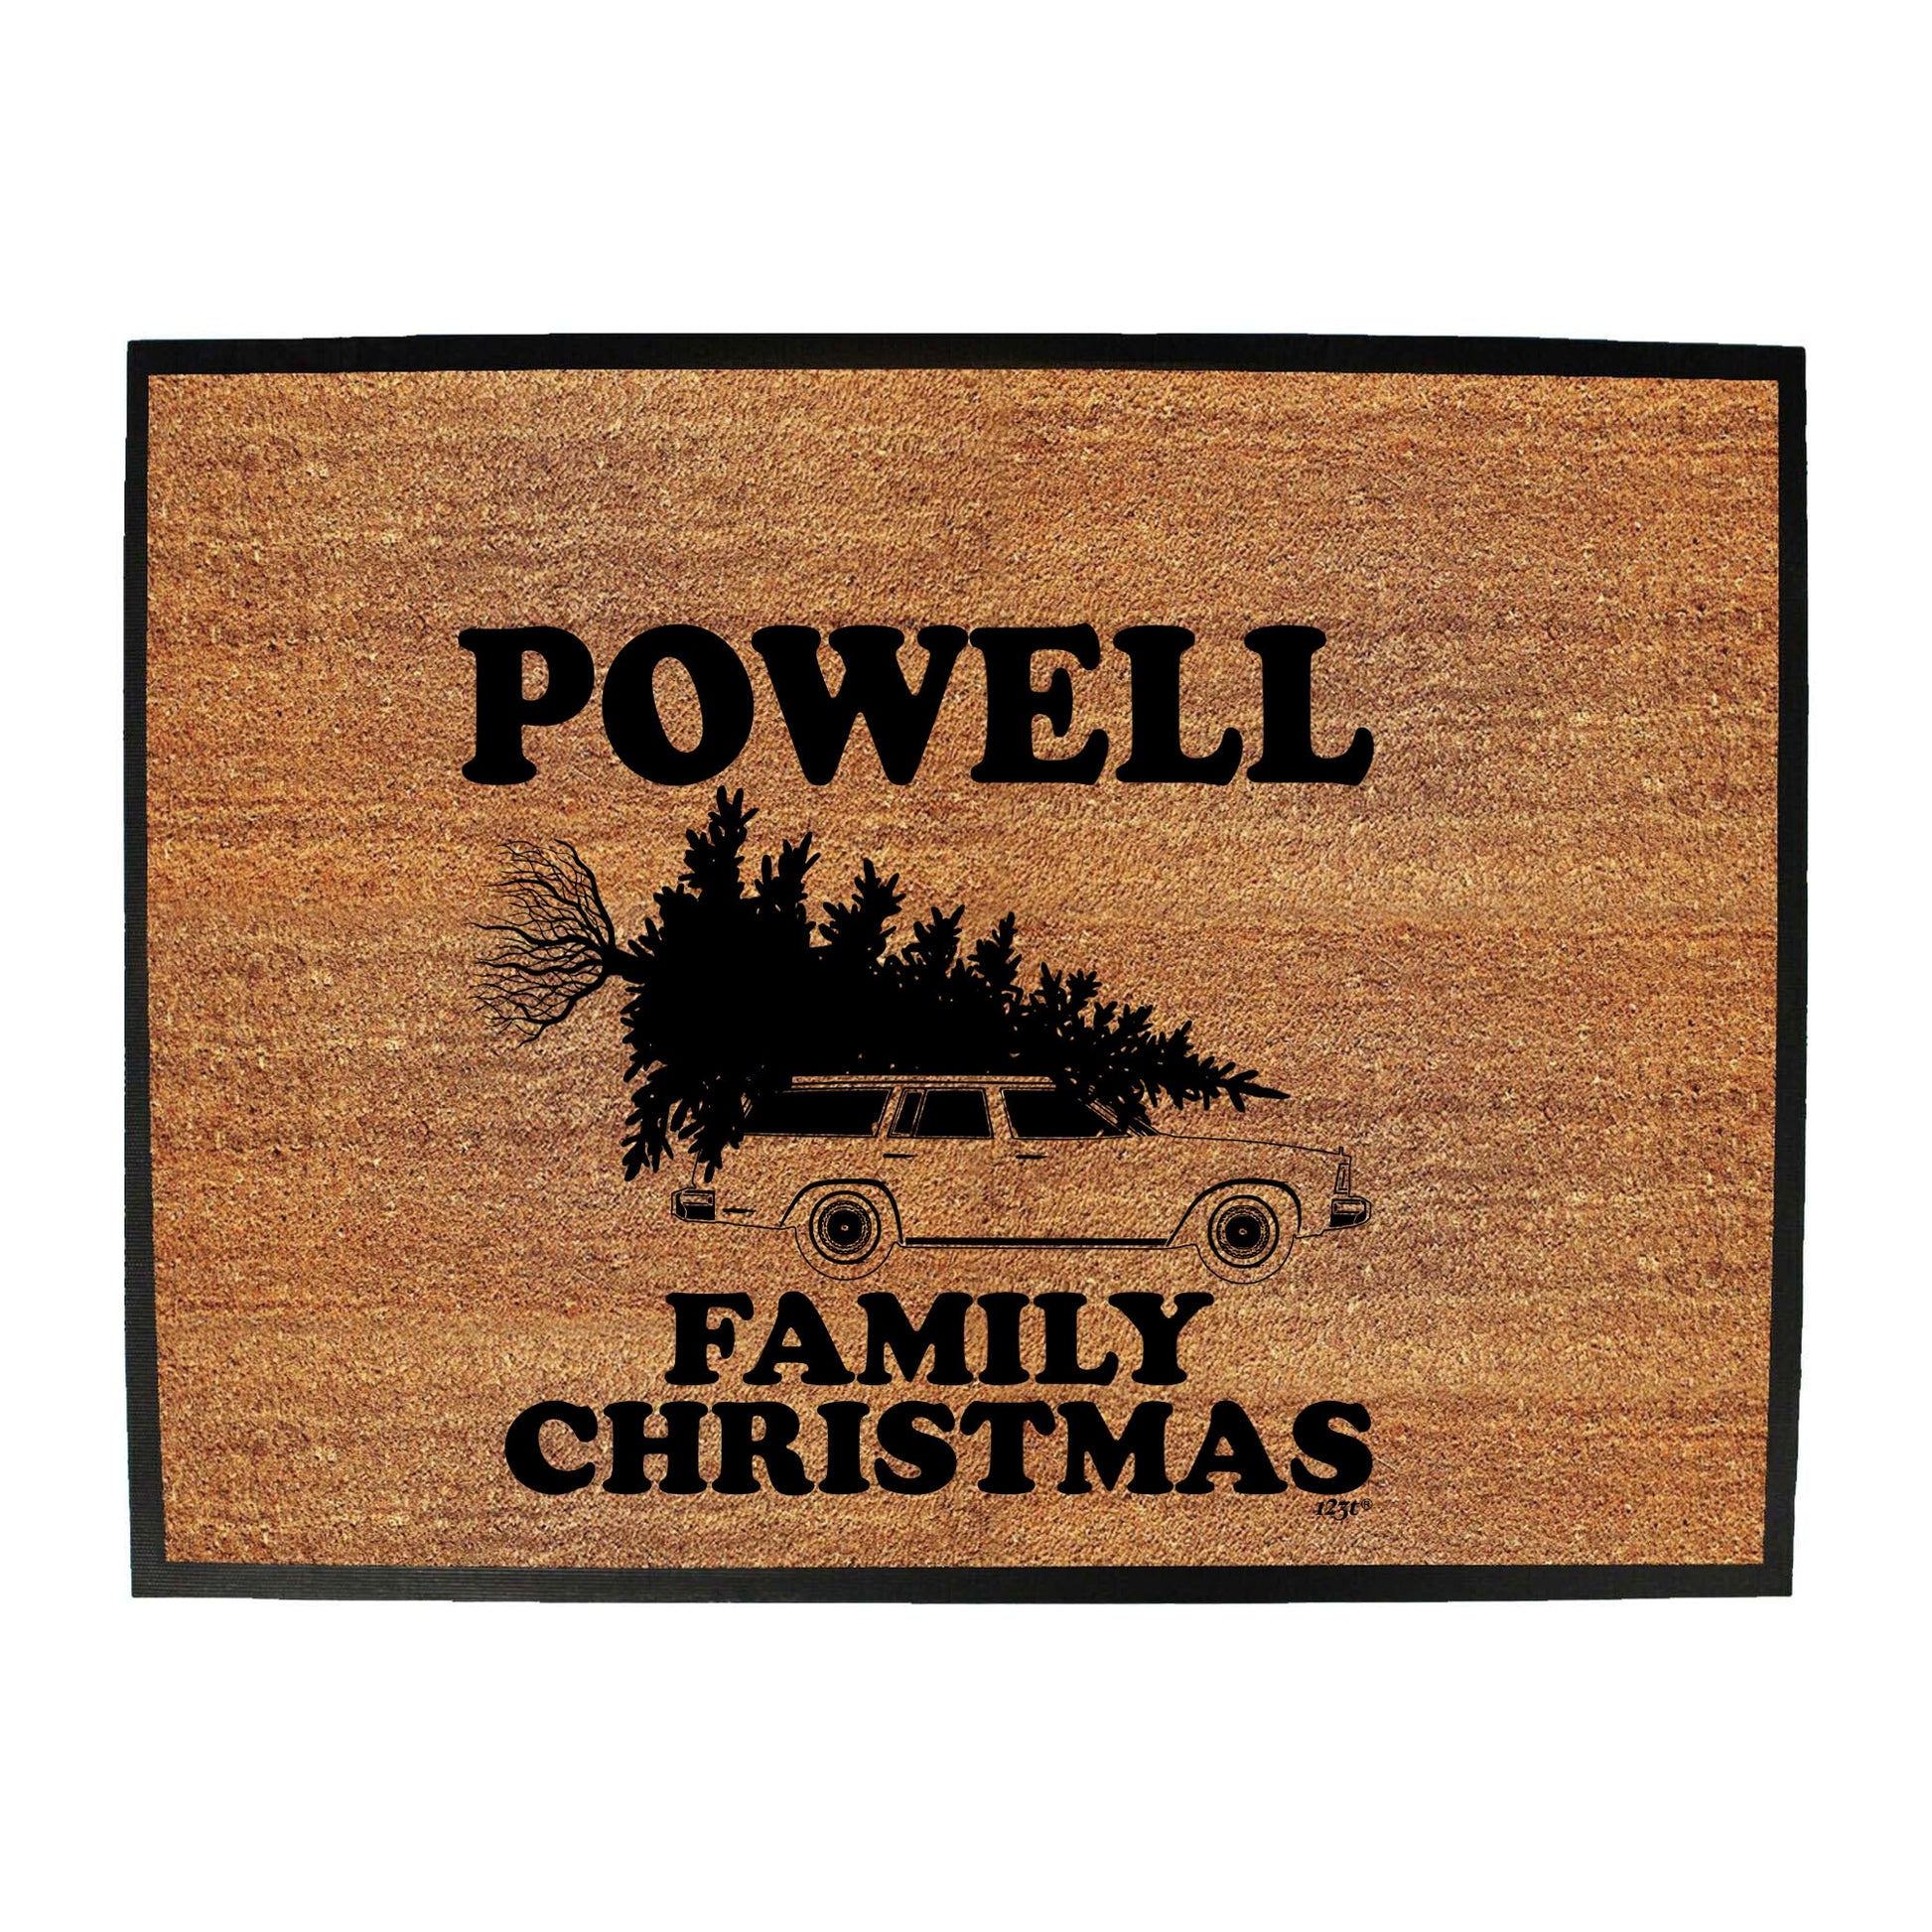 Family Christmas Powell - Funny Novelty Doormat